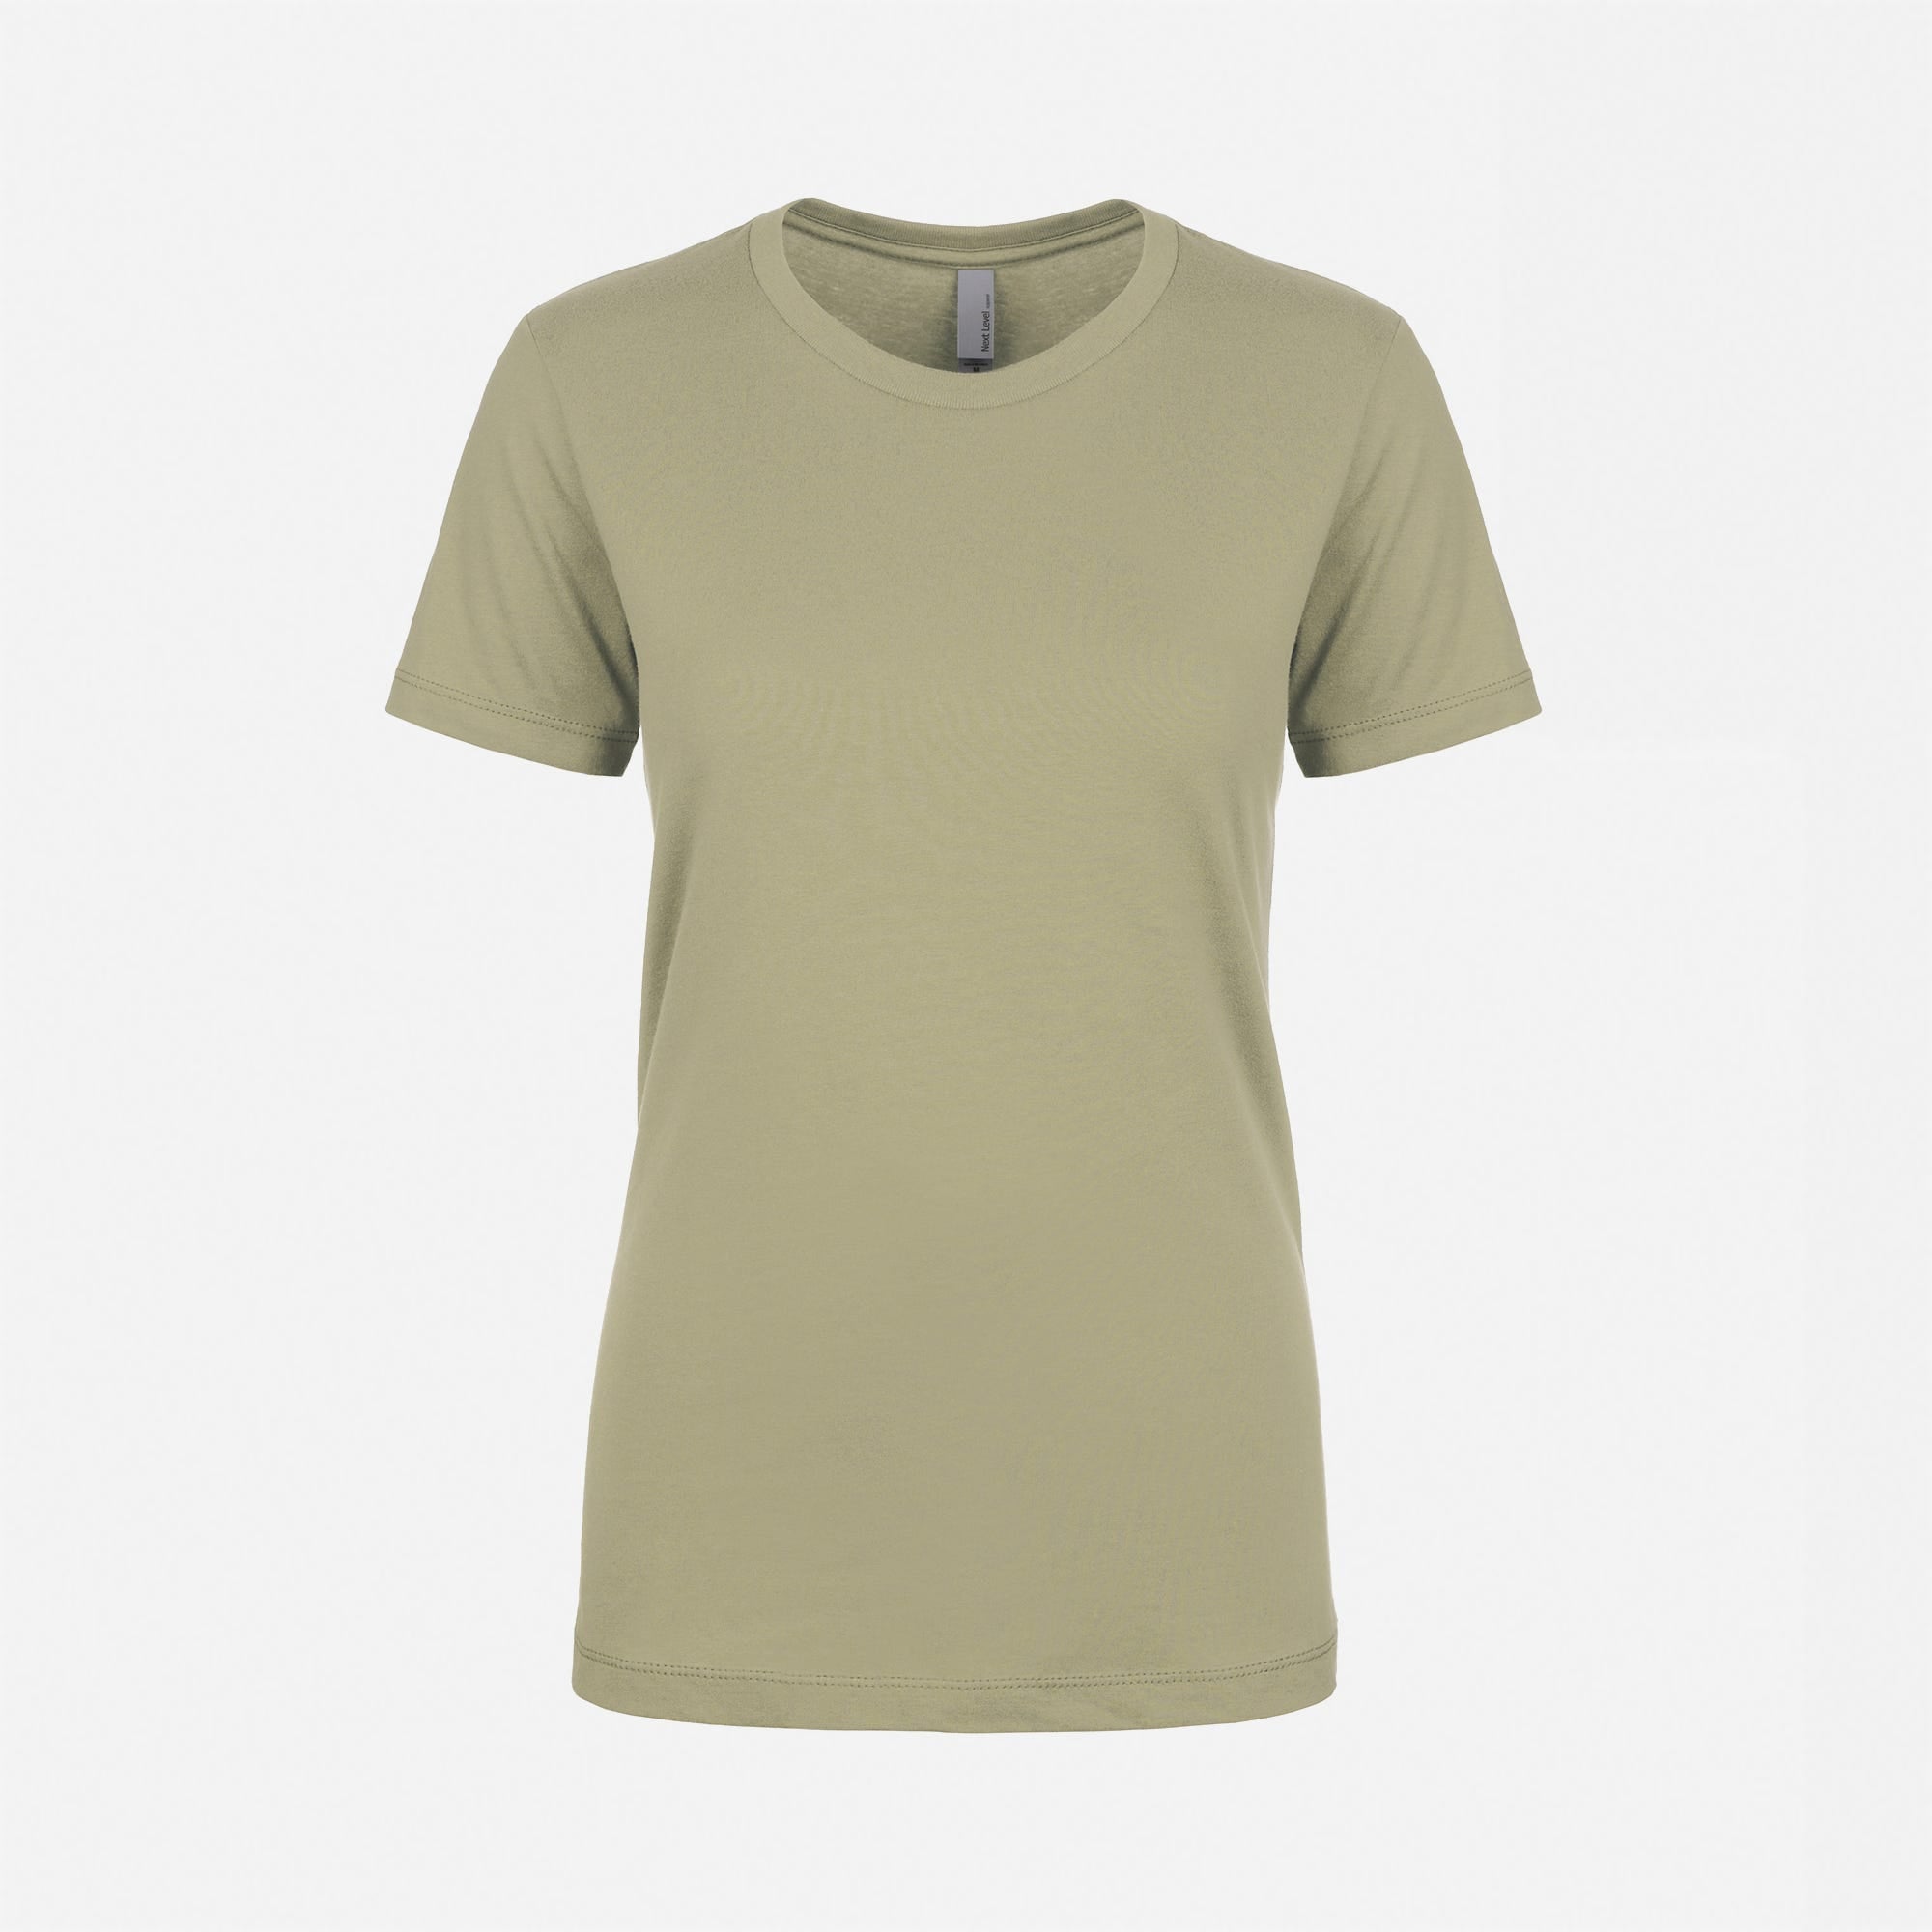 Cotton Boyfriend T-Shirt Light Olive 3900 Next Level Apparel Women Size Front